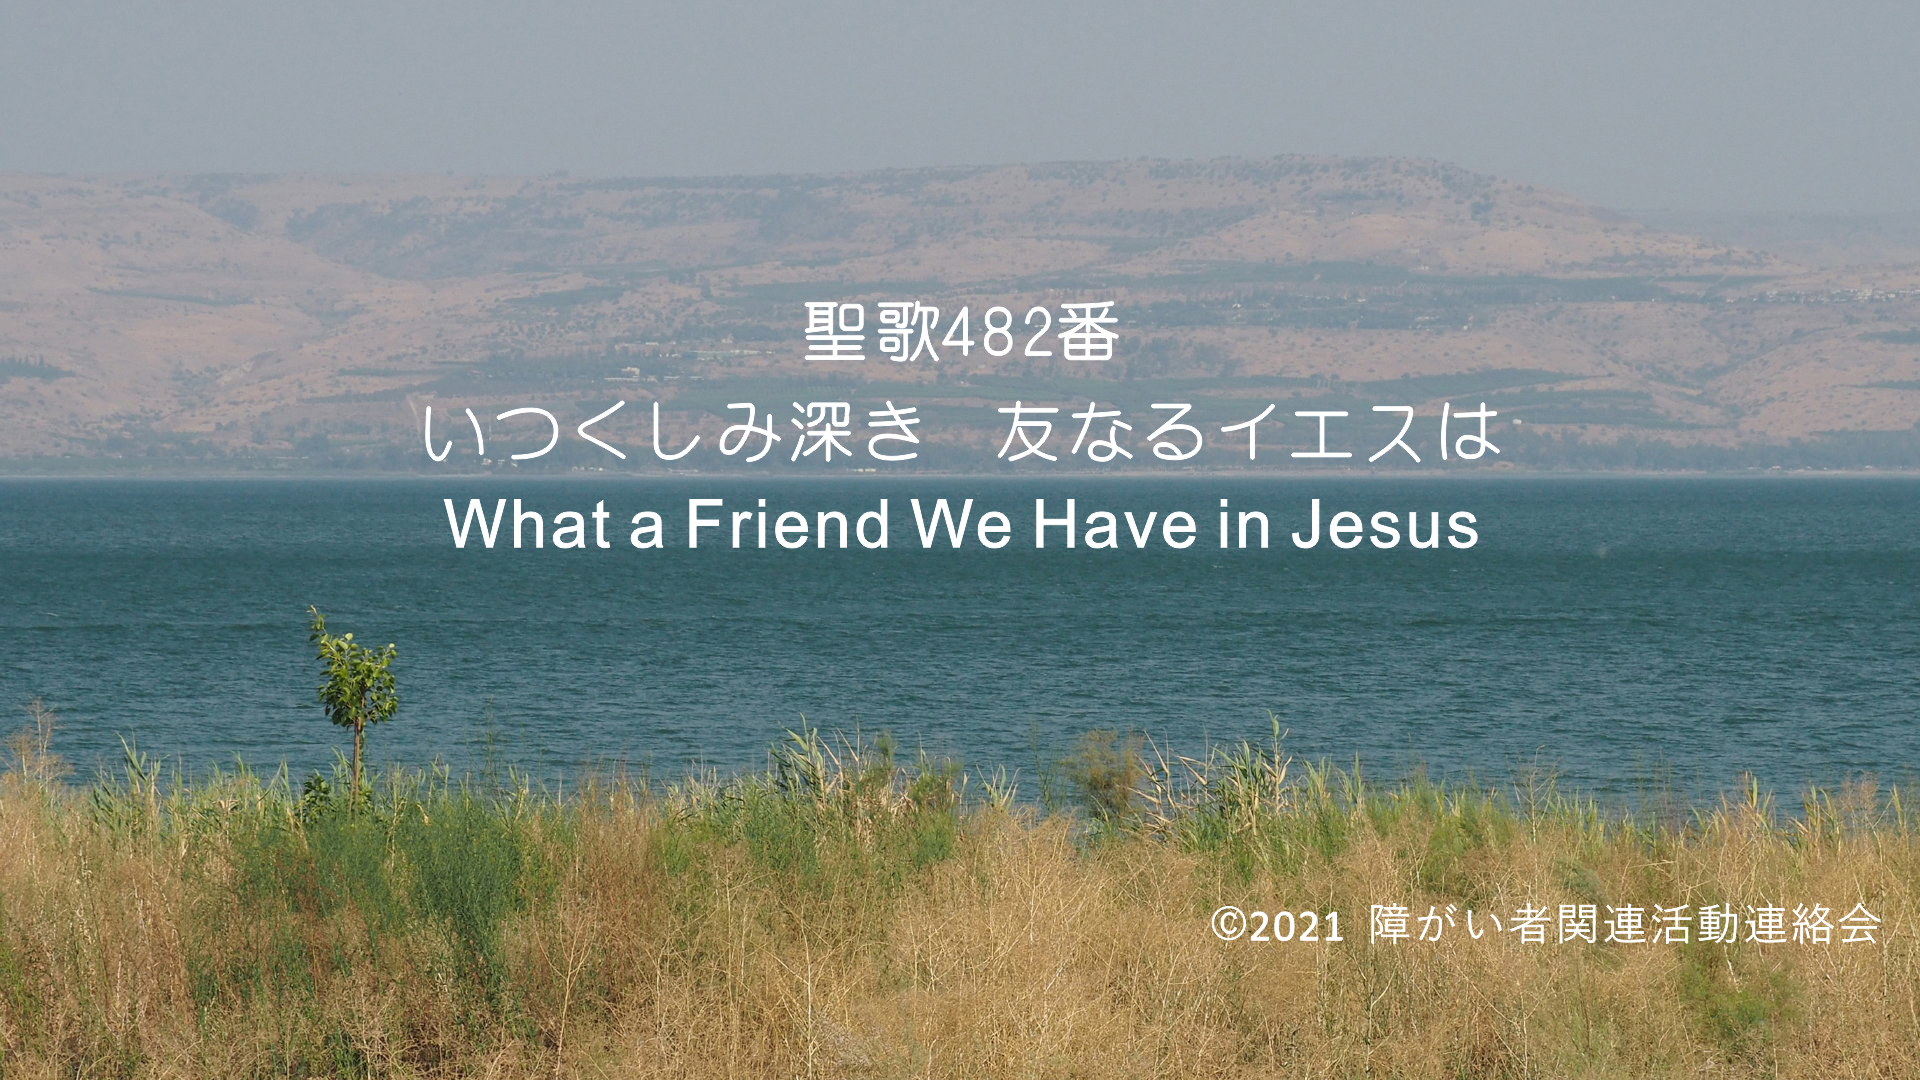 音楽ビデオのタイトル頁、ガリラヤ湖を背景に聖歌482番「いつくしみ深き　ともなるイエスは」と書いてある